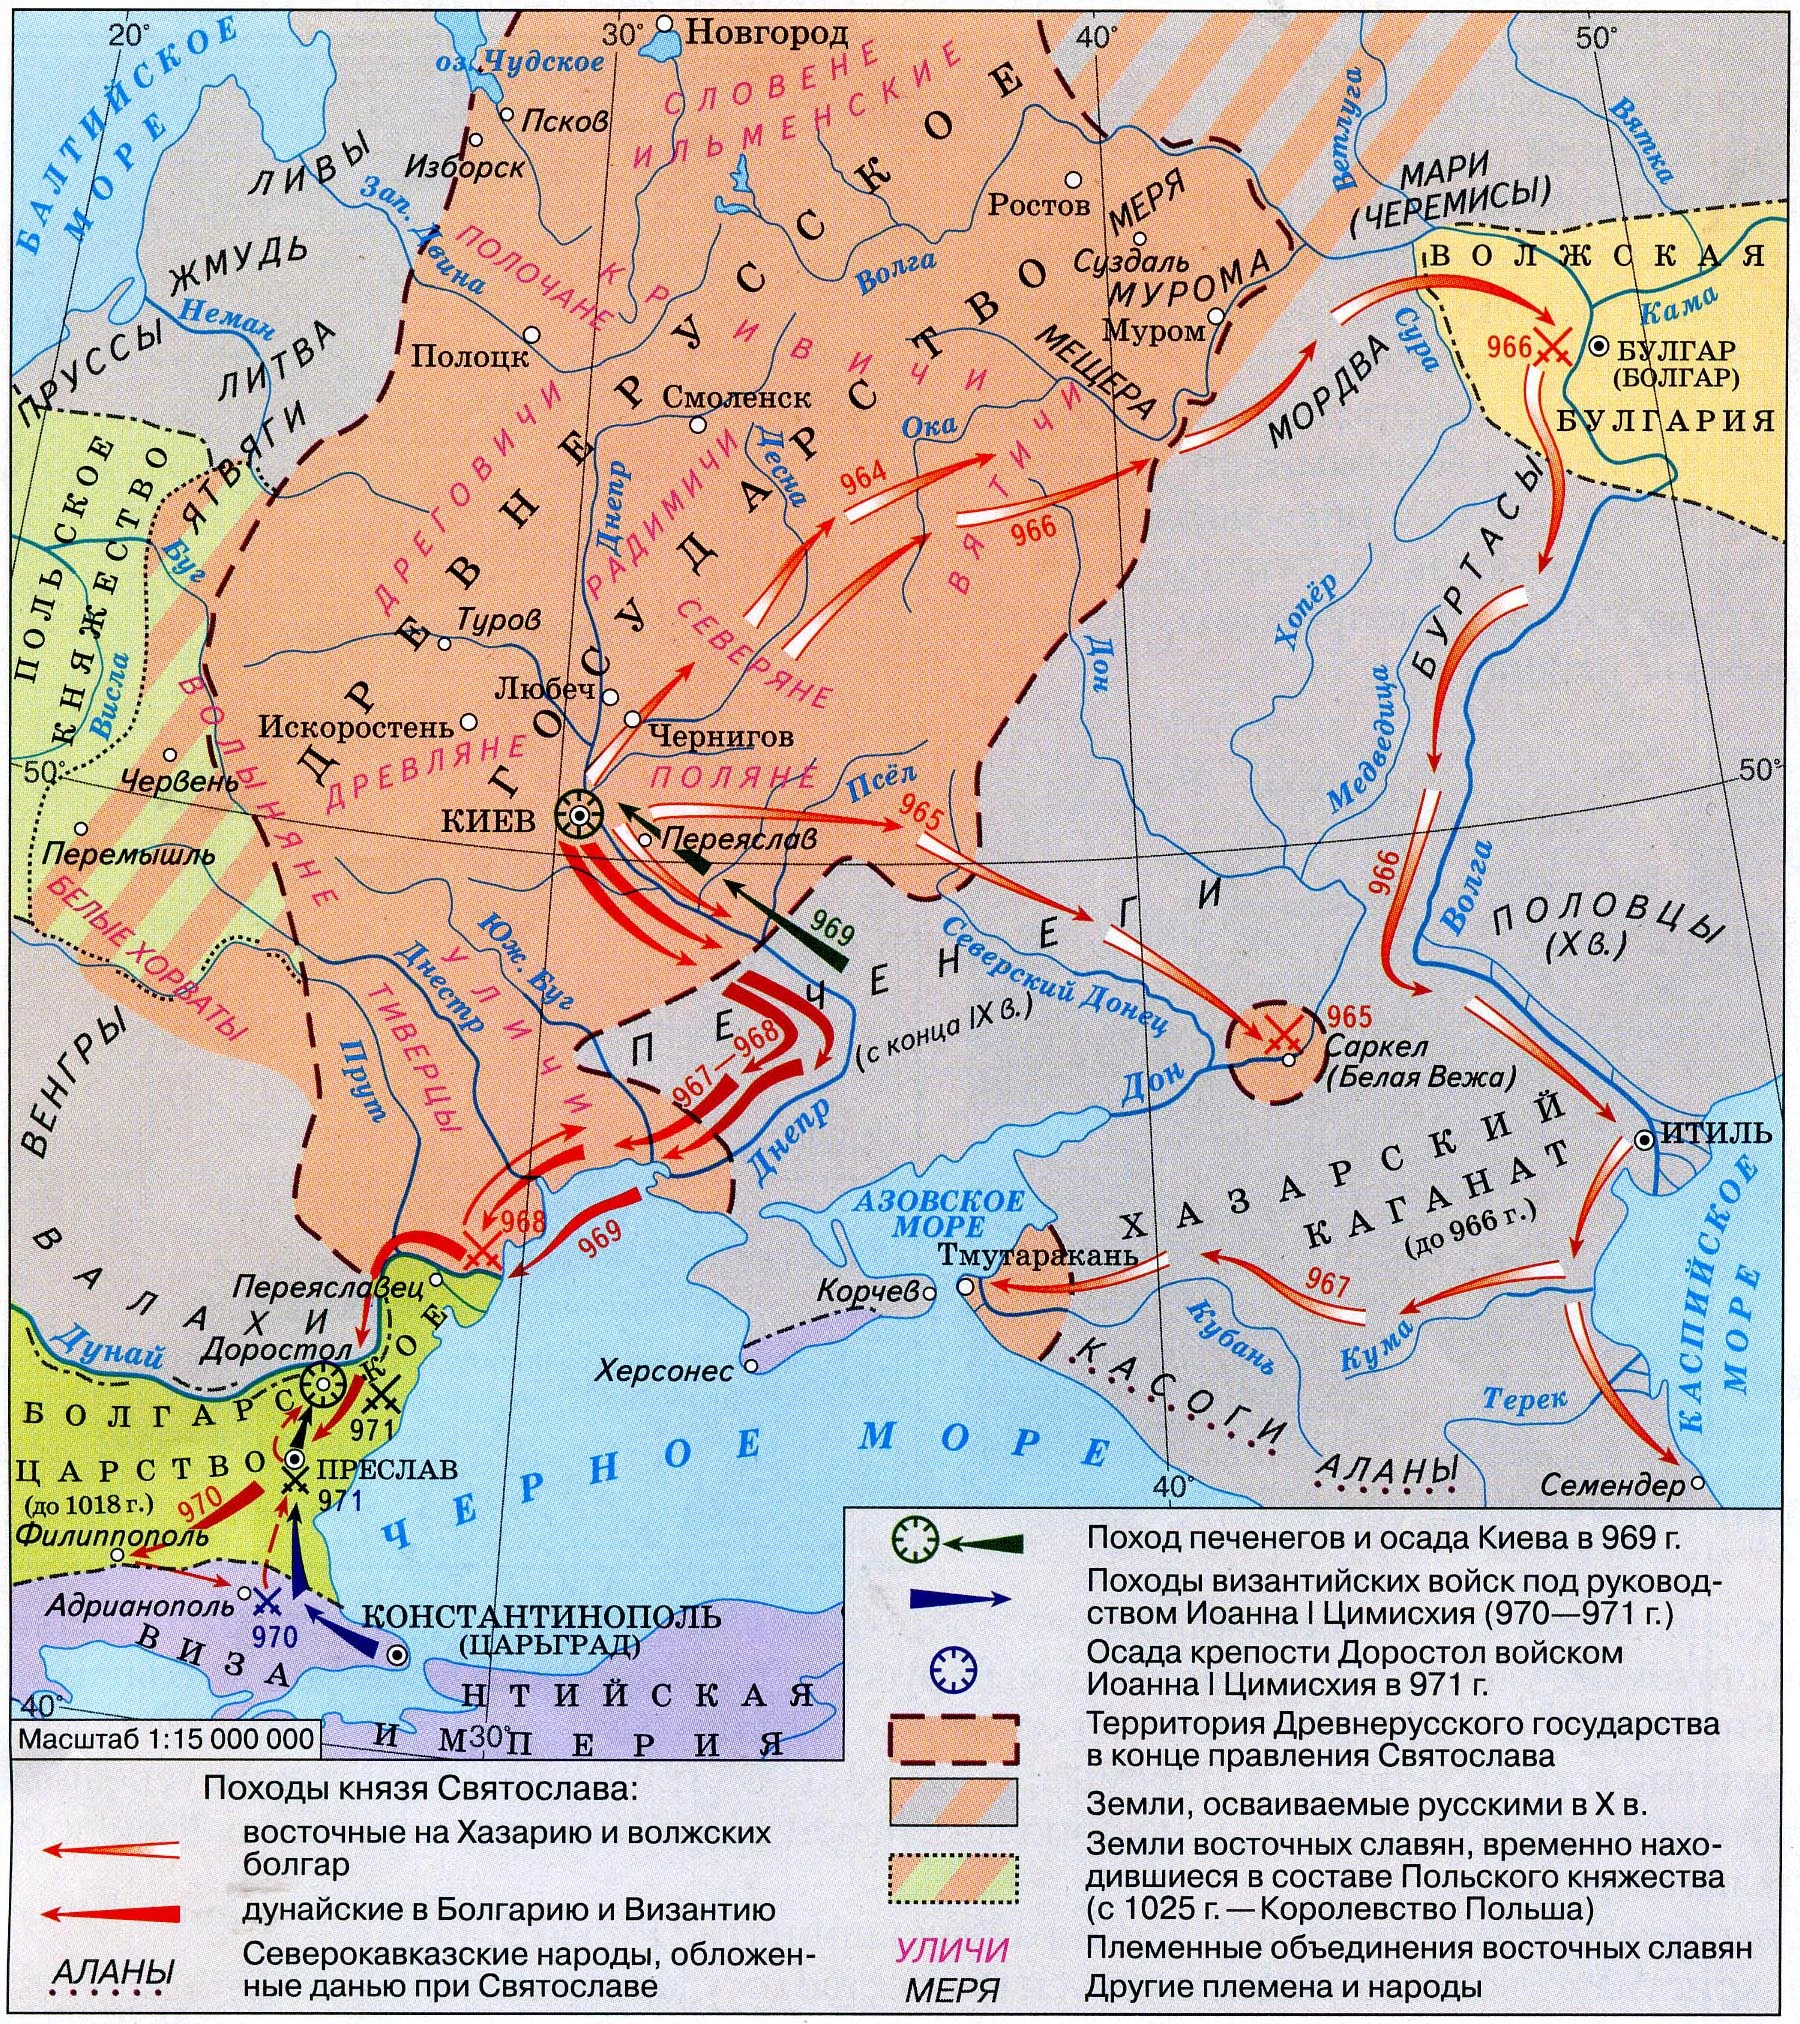 Хазарский поход 964 года